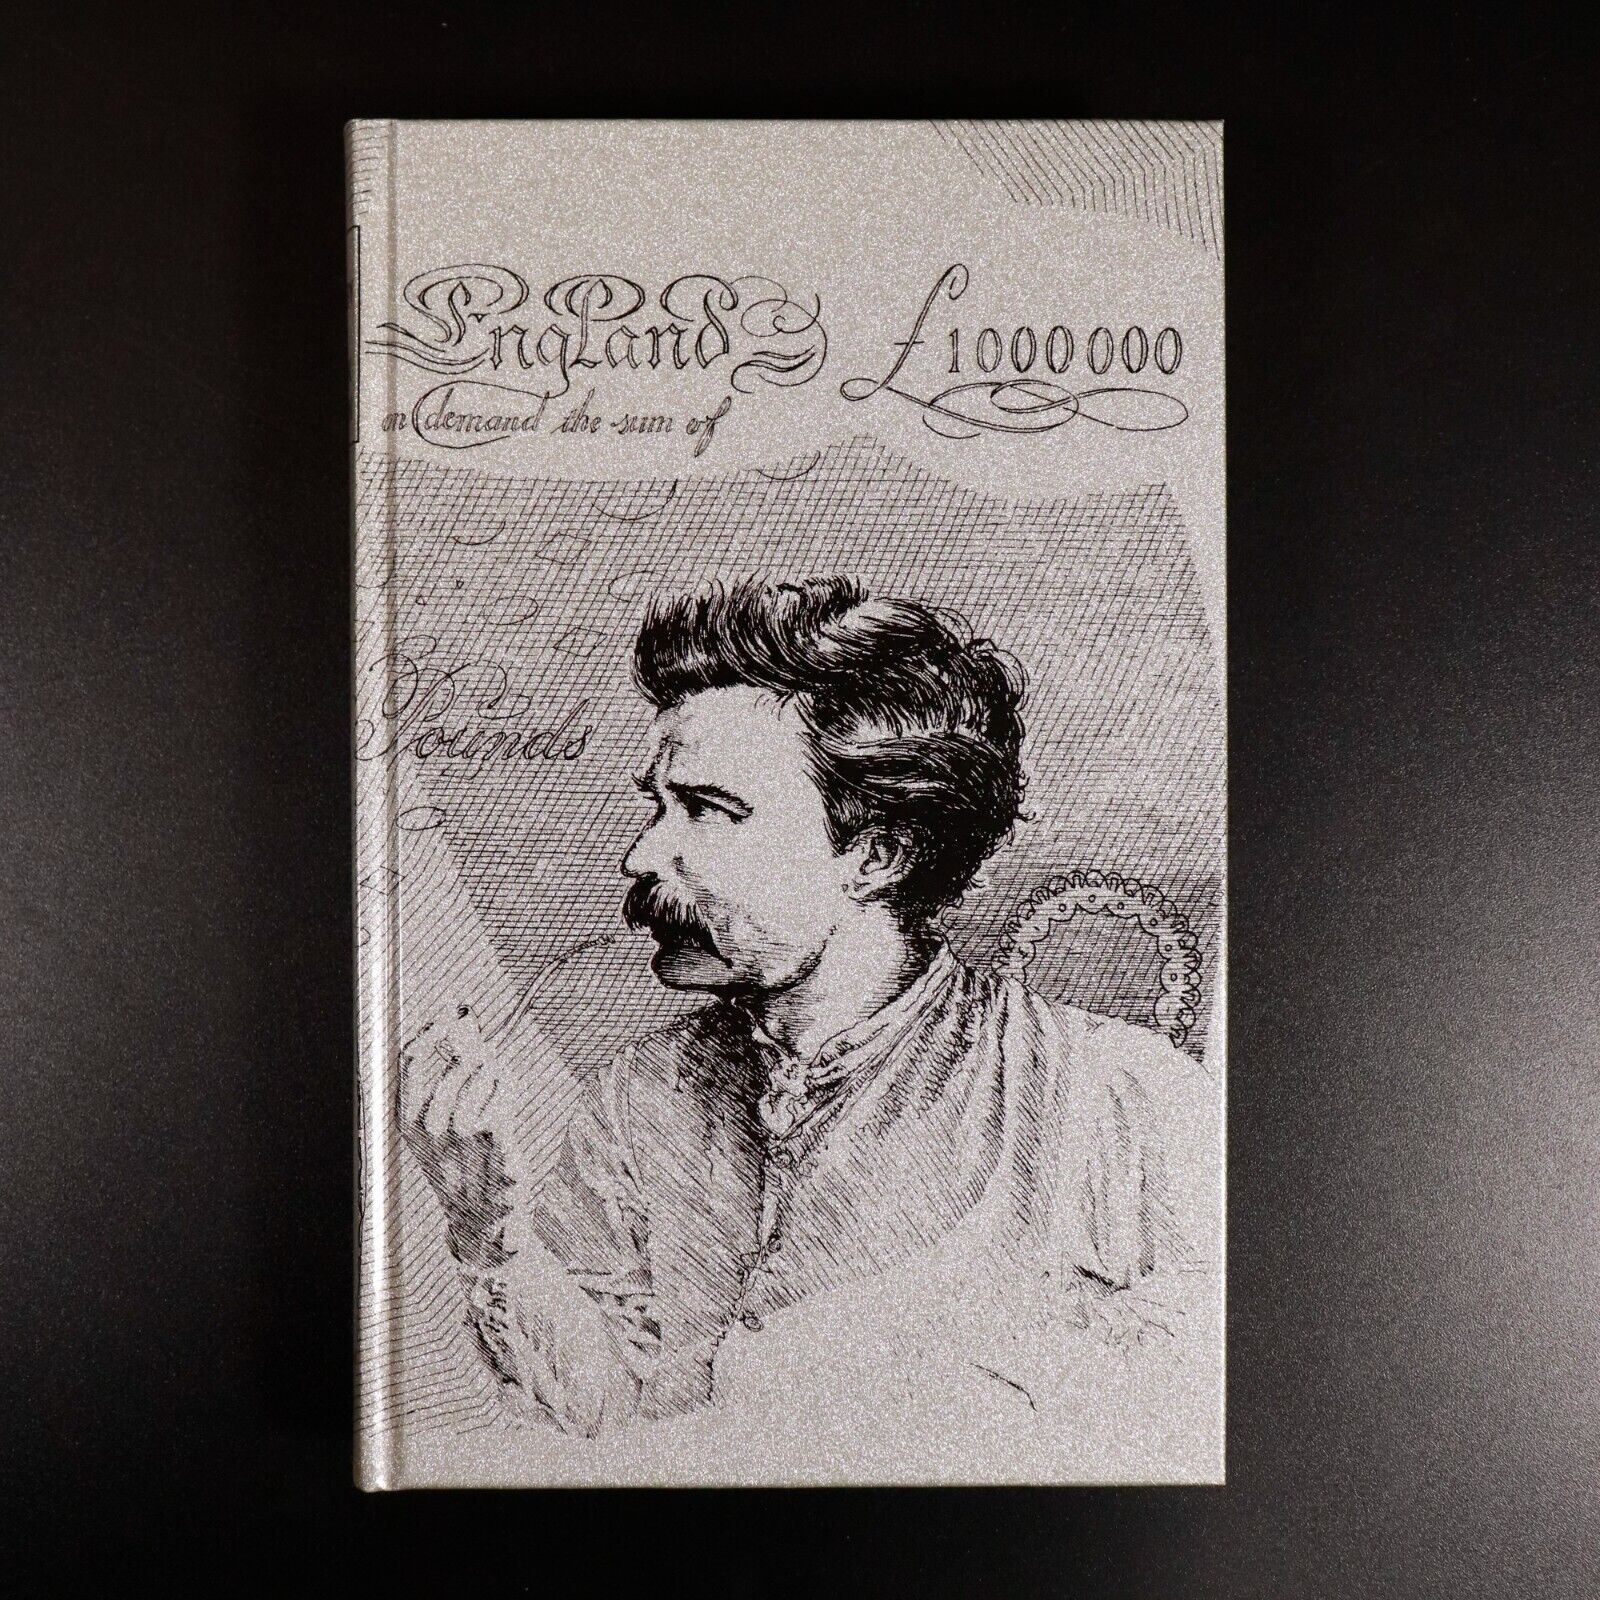 2001 A Treasury Of Mark Twain Folio Society Illustrated Fiction Book